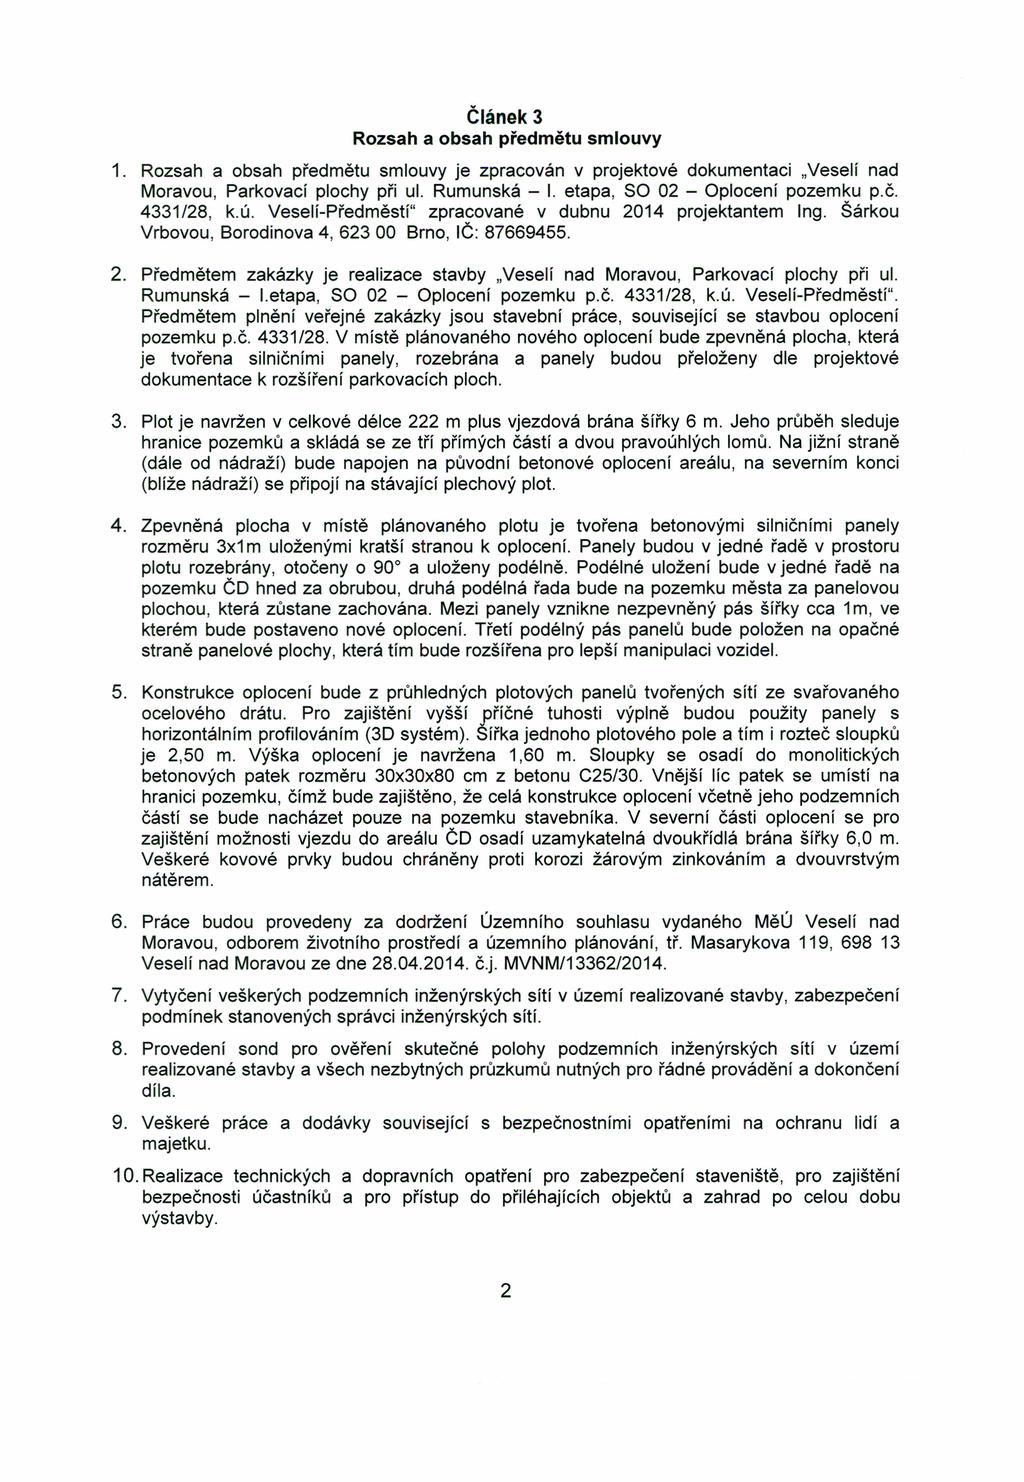 Článek 3 Rozsah a obsah předmětu smlouvy 1. Rozsah a obsah předmětu smlouvy je zpracován v projektové dokumentaci "Veselí nad Moravou, Parkovací plochy při ul. Rumunská - I.